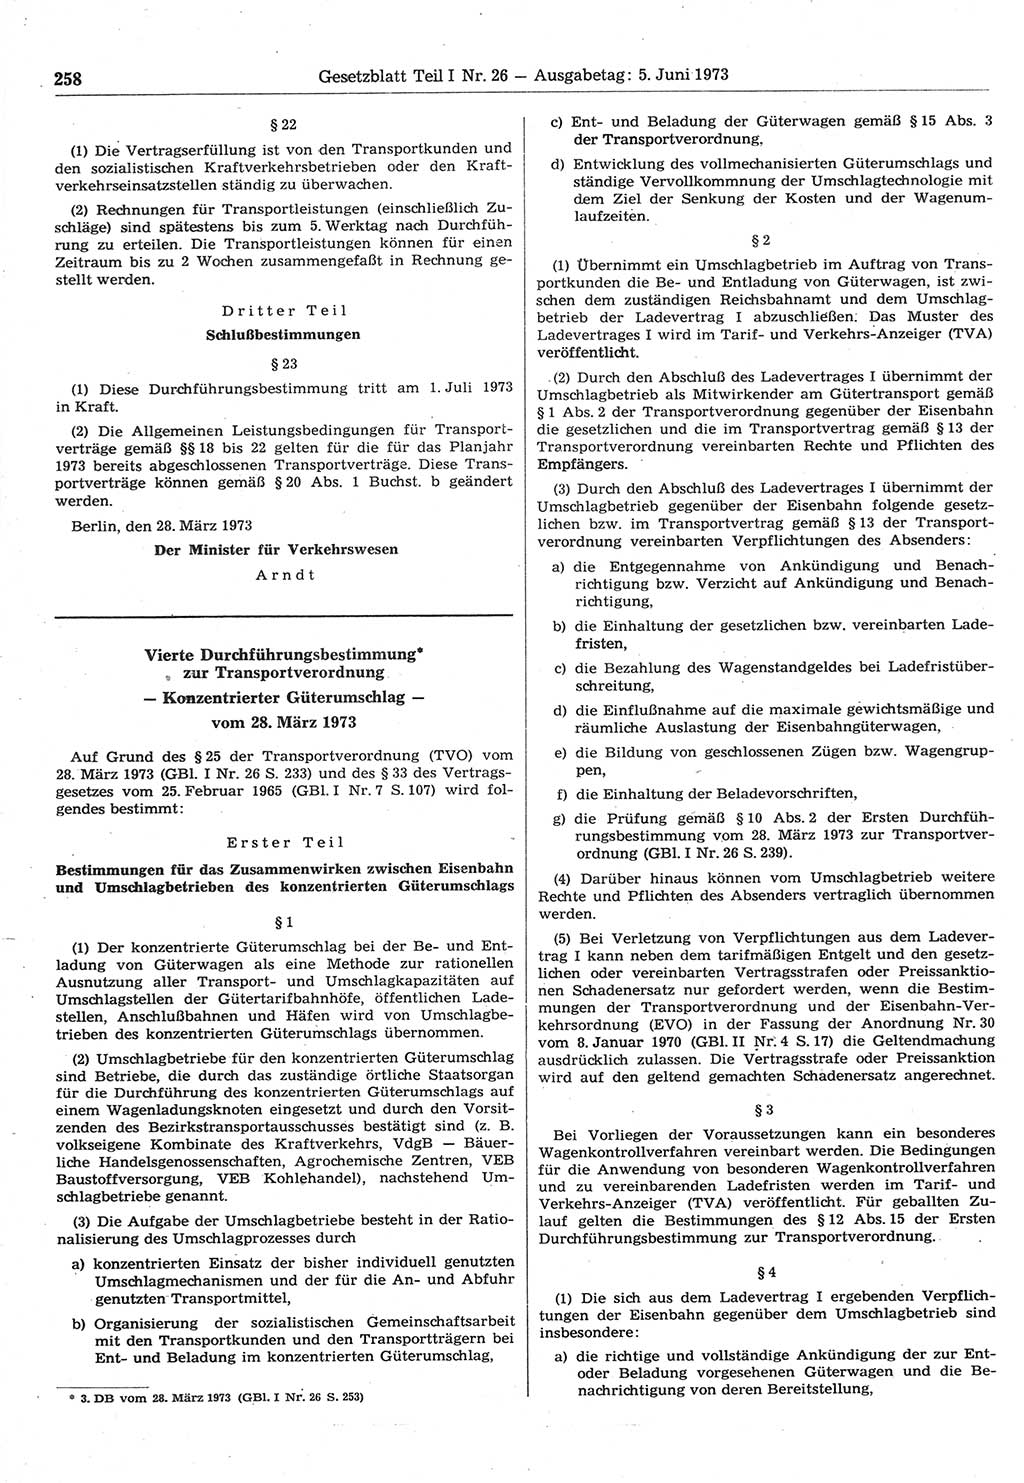 Gesetzblatt (GBl.) der Deutschen Demokratischen Republik (DDR) Teil Ⅰ 1973, Seite 258 (GBl. DDR Ⅰ 1973, S. 258)